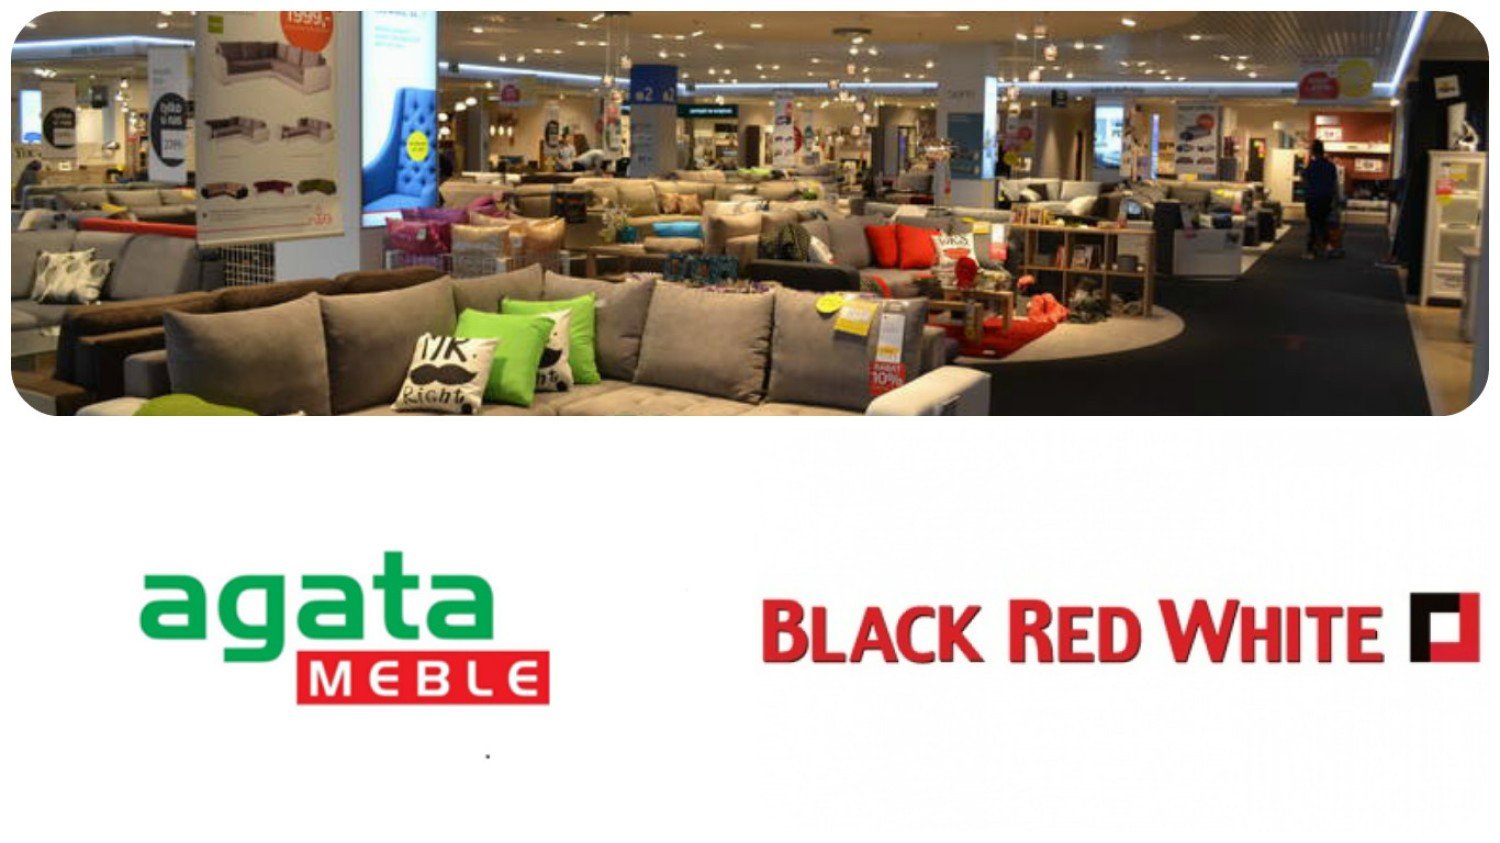 Promocje w Agata Meble i Black Red White - jest decyzja UOKiK. Będą zwroty  dla klientów | śląskie Nasze Miasto